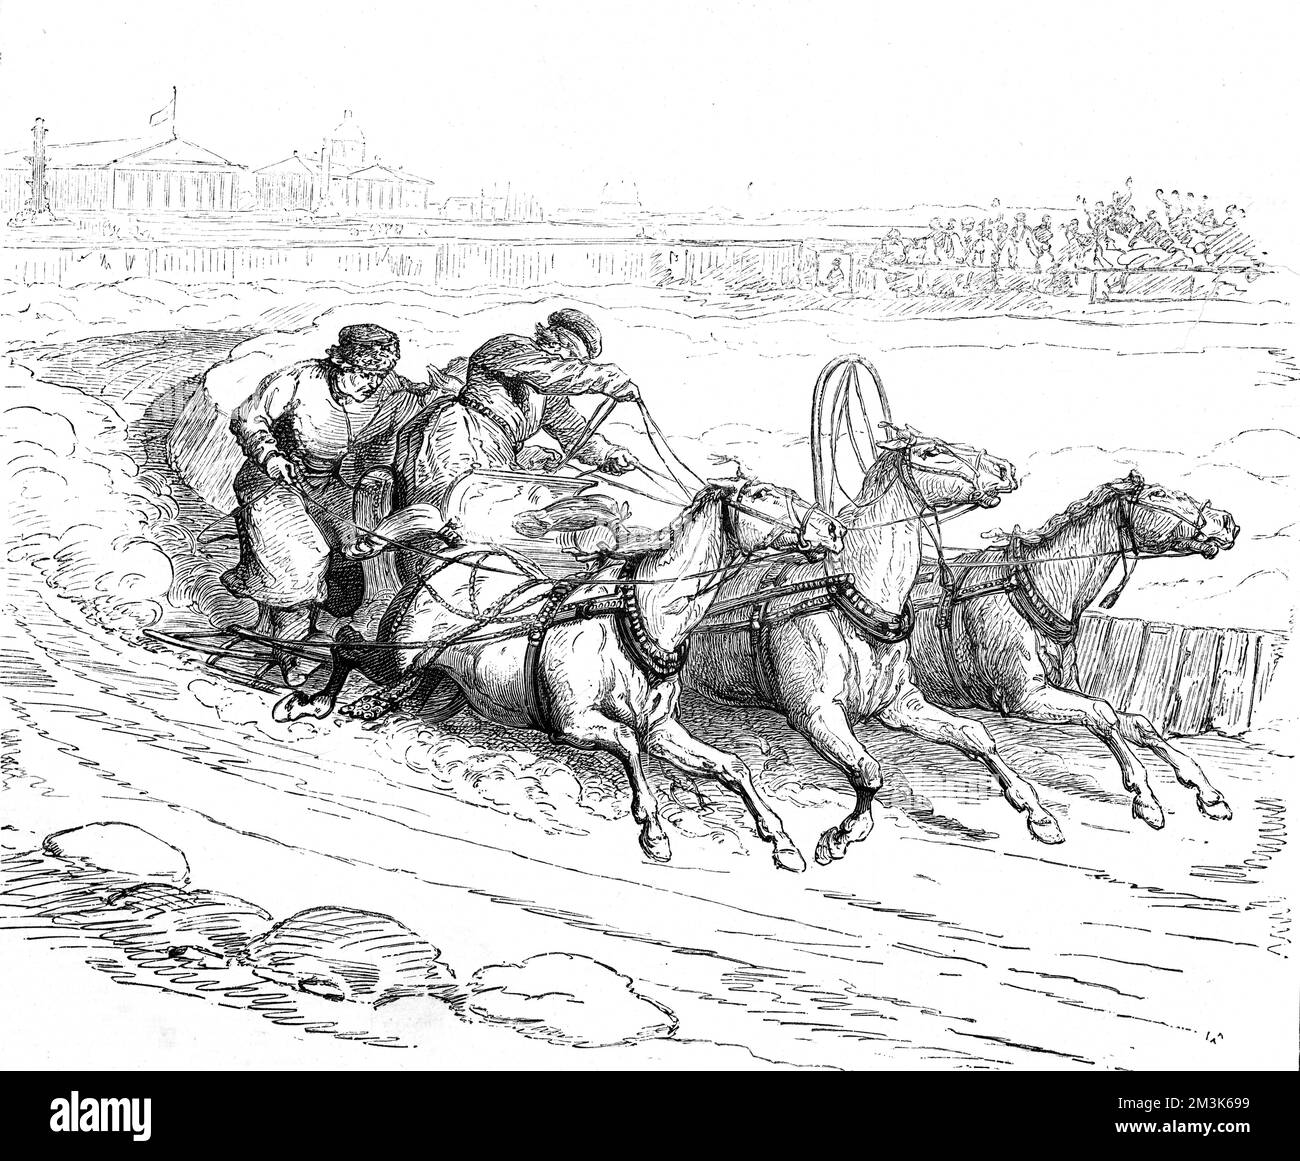 Course de traîneau à cheval en cours à St. Petersburgh, Russie. Deux hommes à bord du traîneau, dans un coin serré. Date: 1877 Banque D'Images